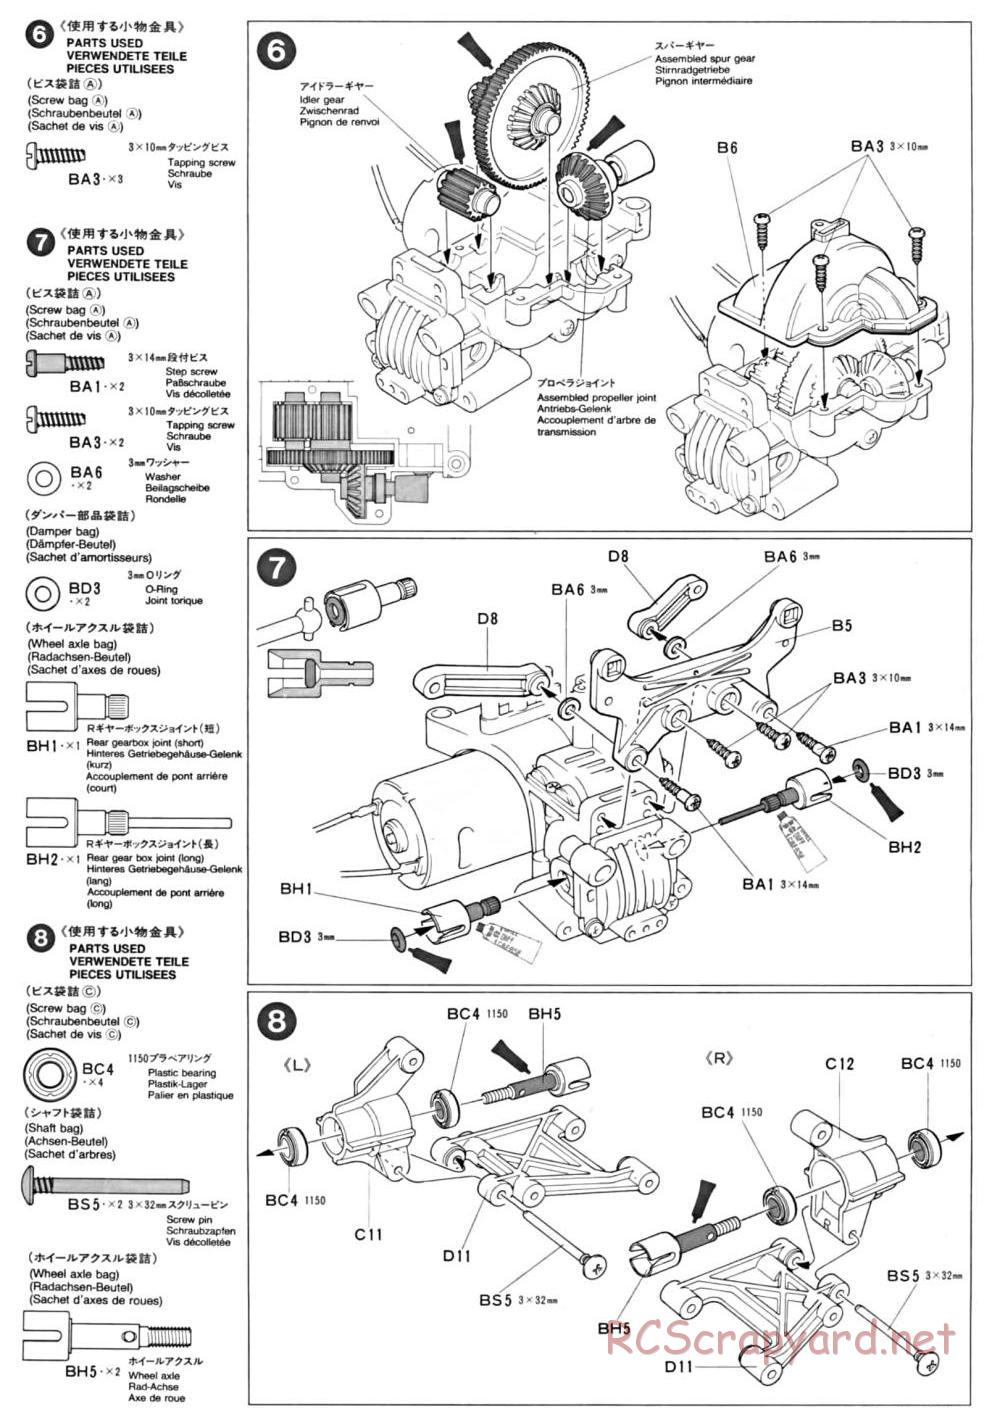 Tamiya - TA-01 Chassis - Manual - Page 3